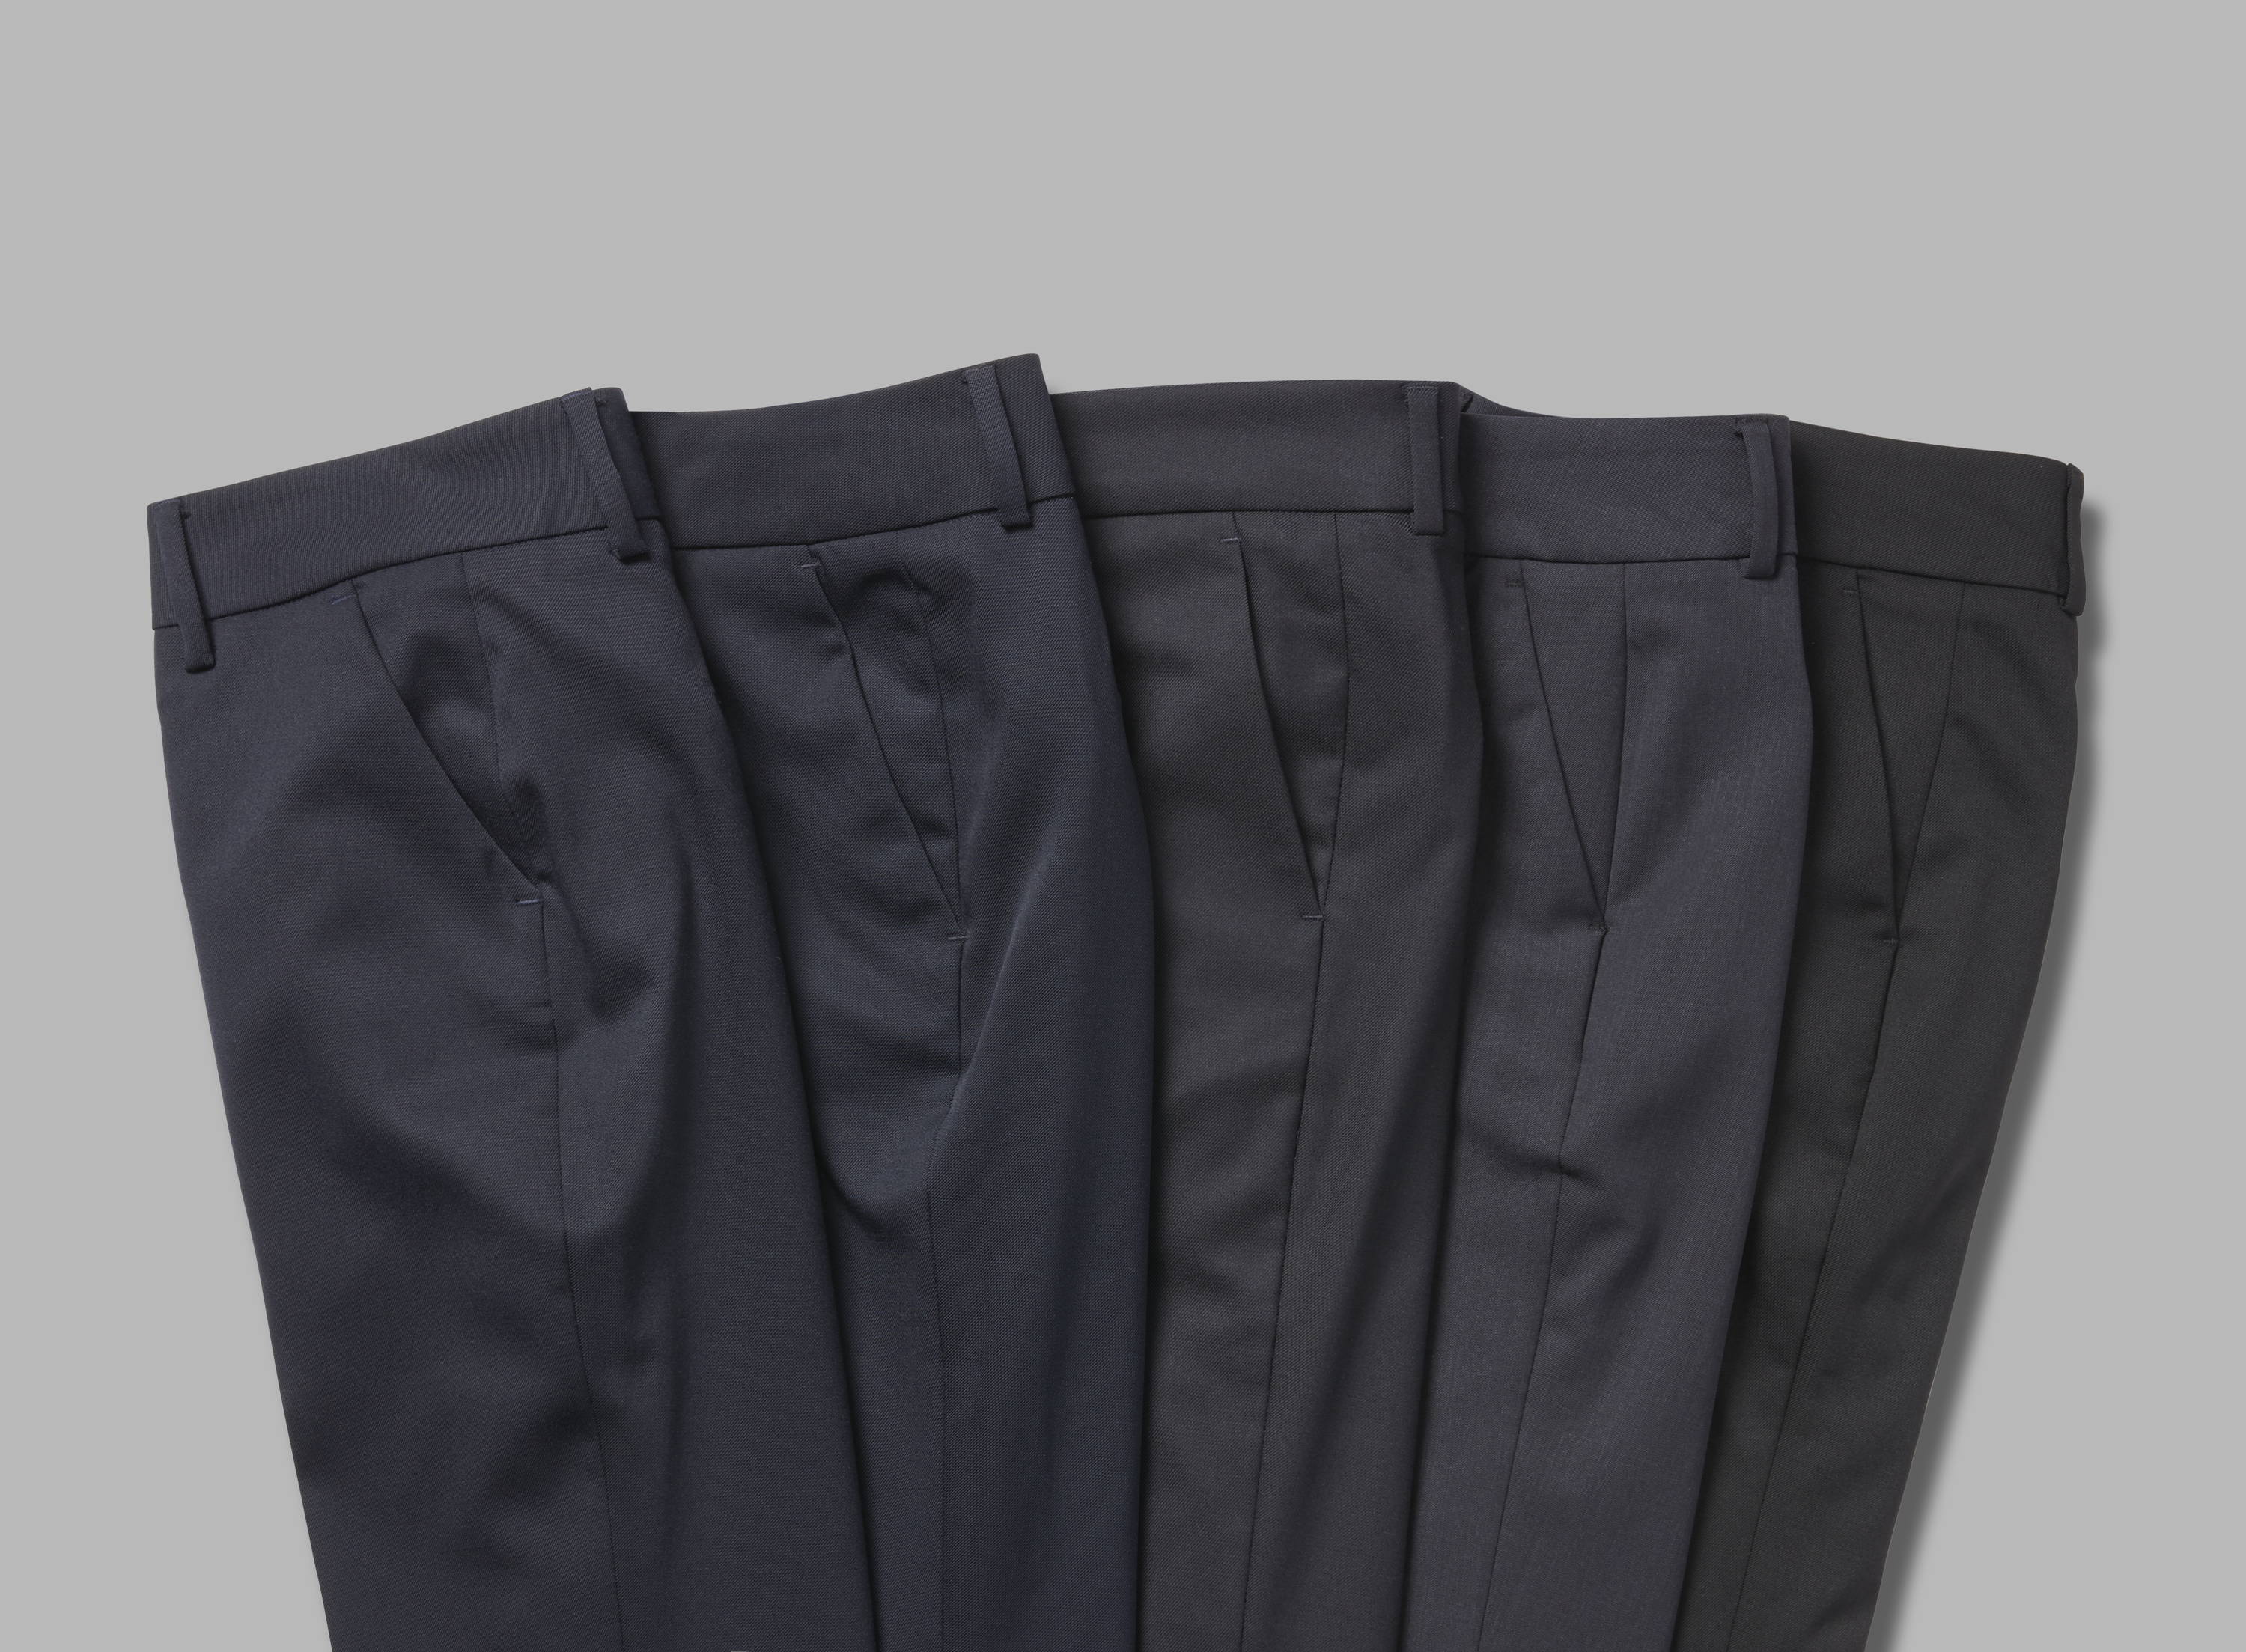 Men's Trousers - Uniform Compliant, Machine Washable, Durable